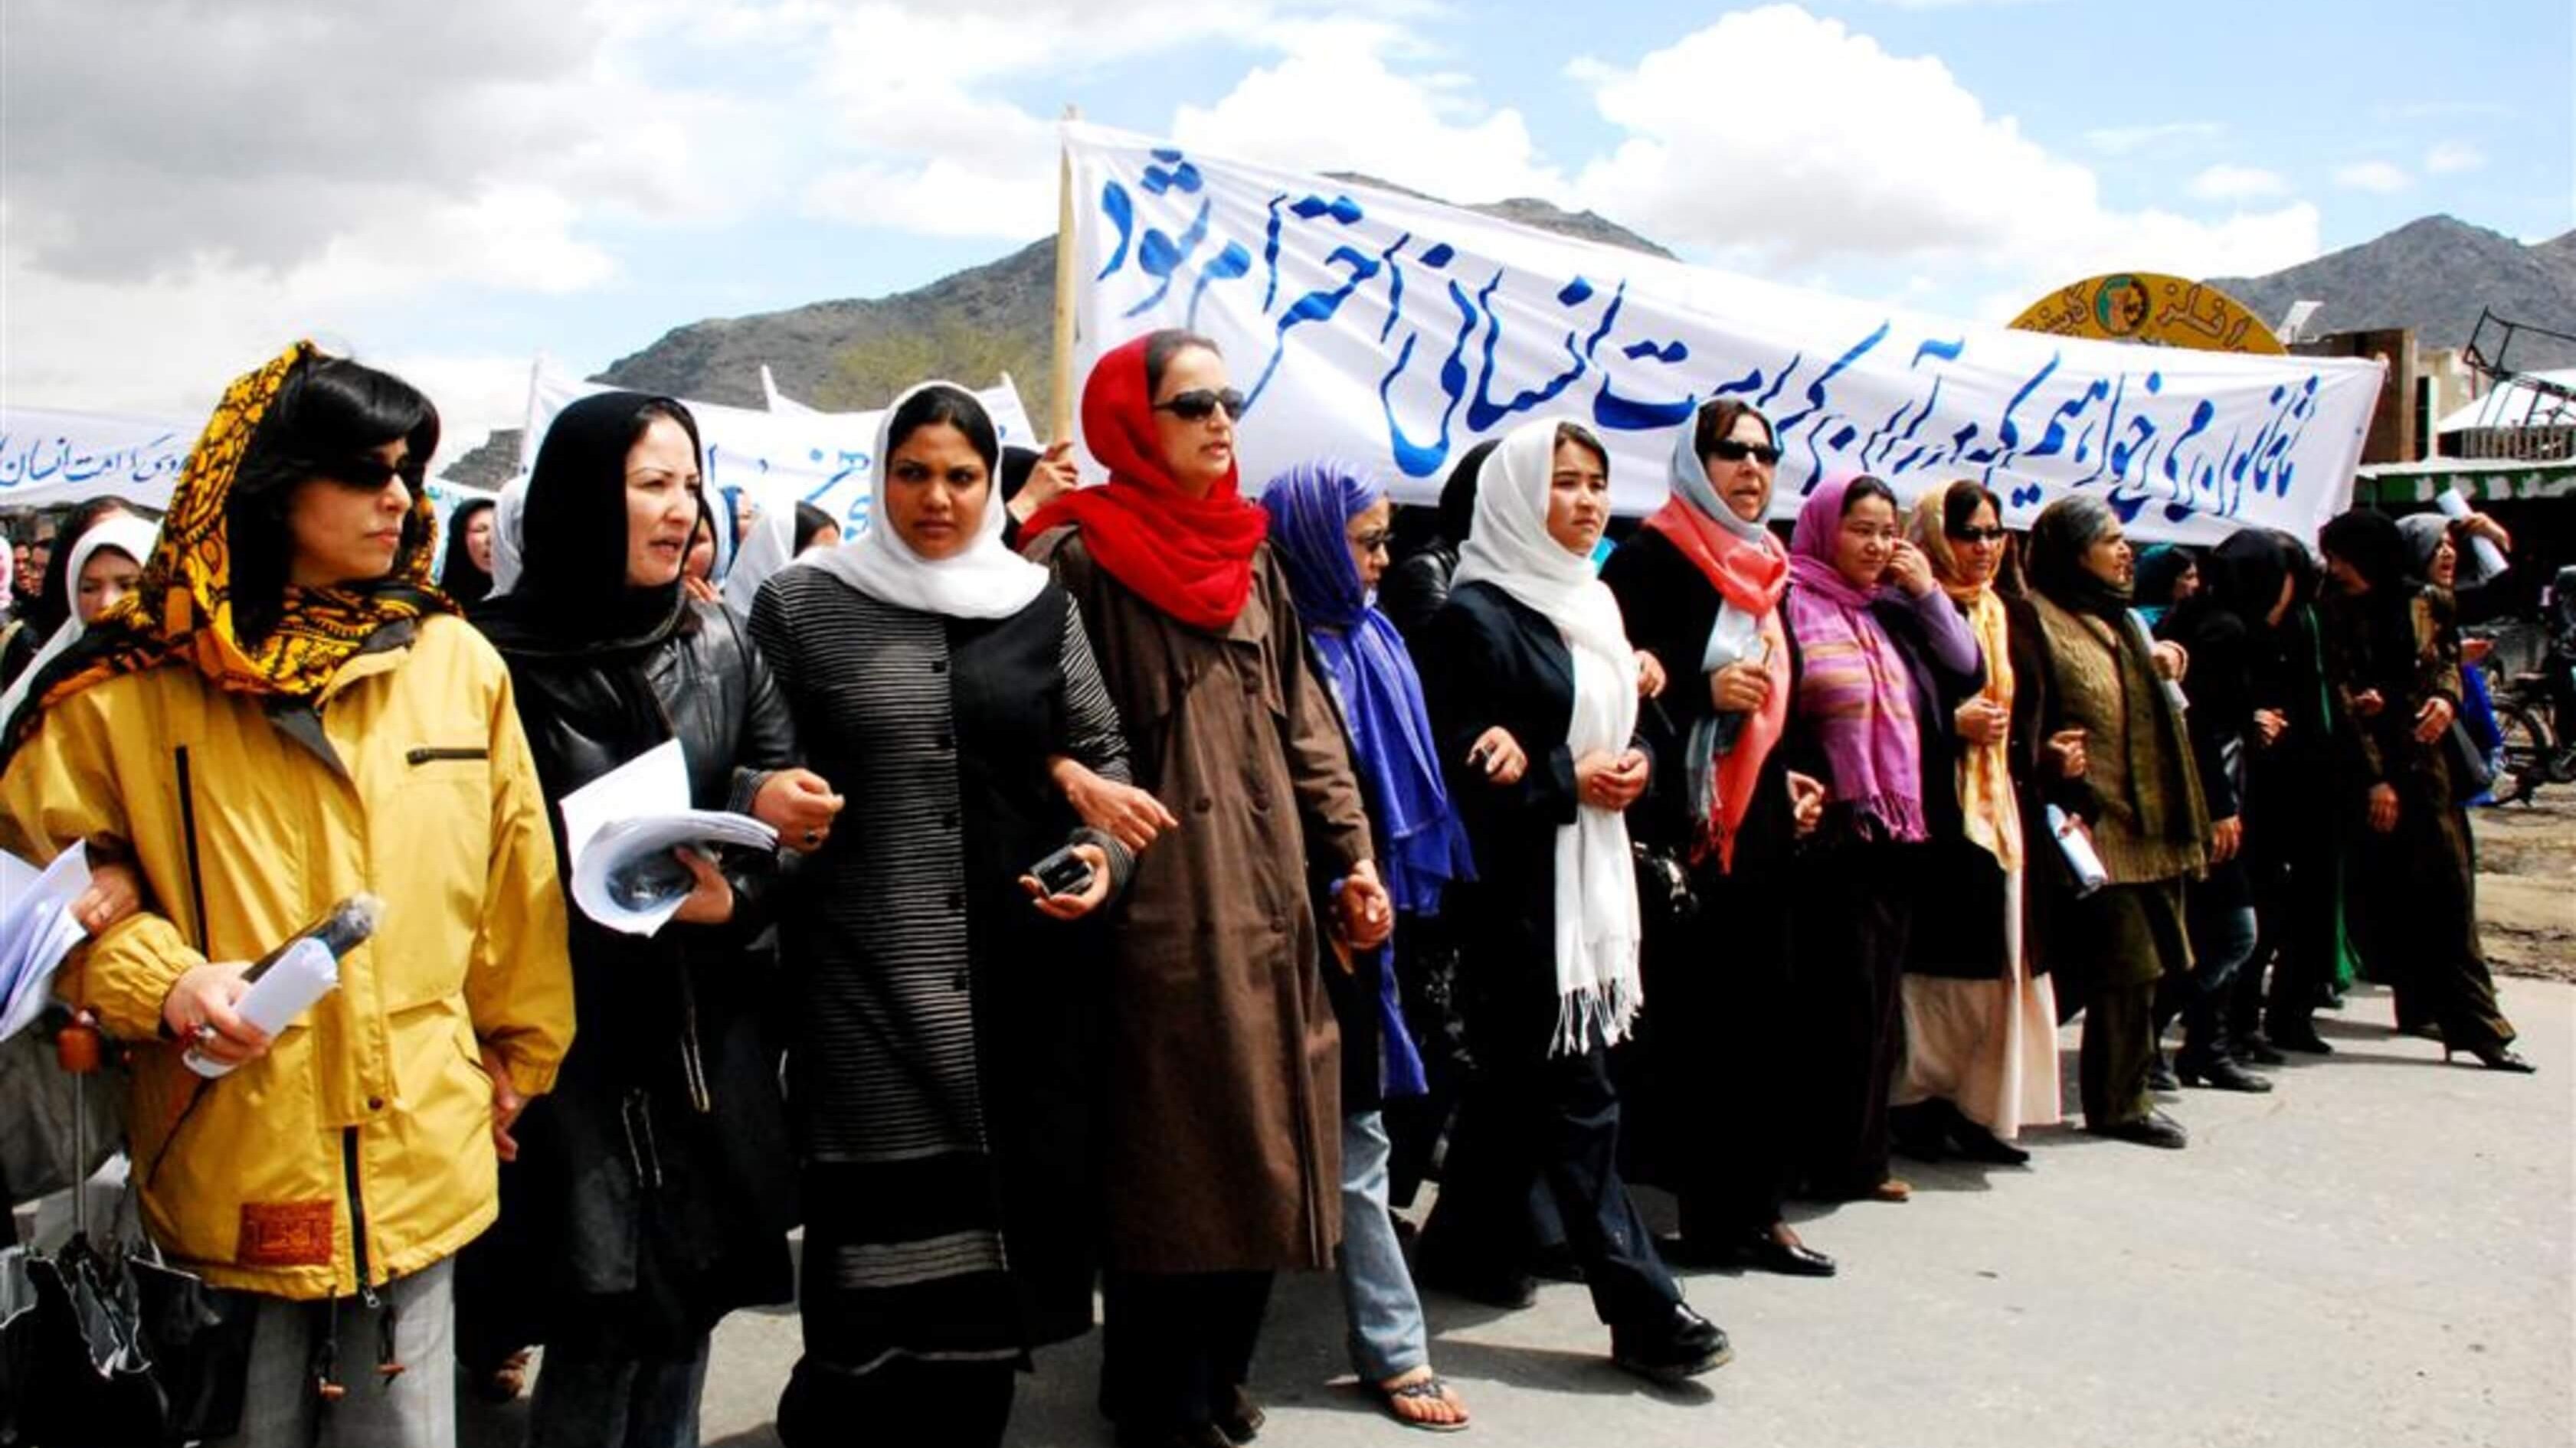 Des militantes afghanes des droits des femmes manifestent contre la loi controversée pour l'Afghanistan qui régit les affaires personnelles de la communauté chiite minoritaire, 15 avril 2009. Cette loi contient des dispositions discriminatoires, notamment des restrictions à la liberté de mouvement des femmes. La loi a depuis été révisée.